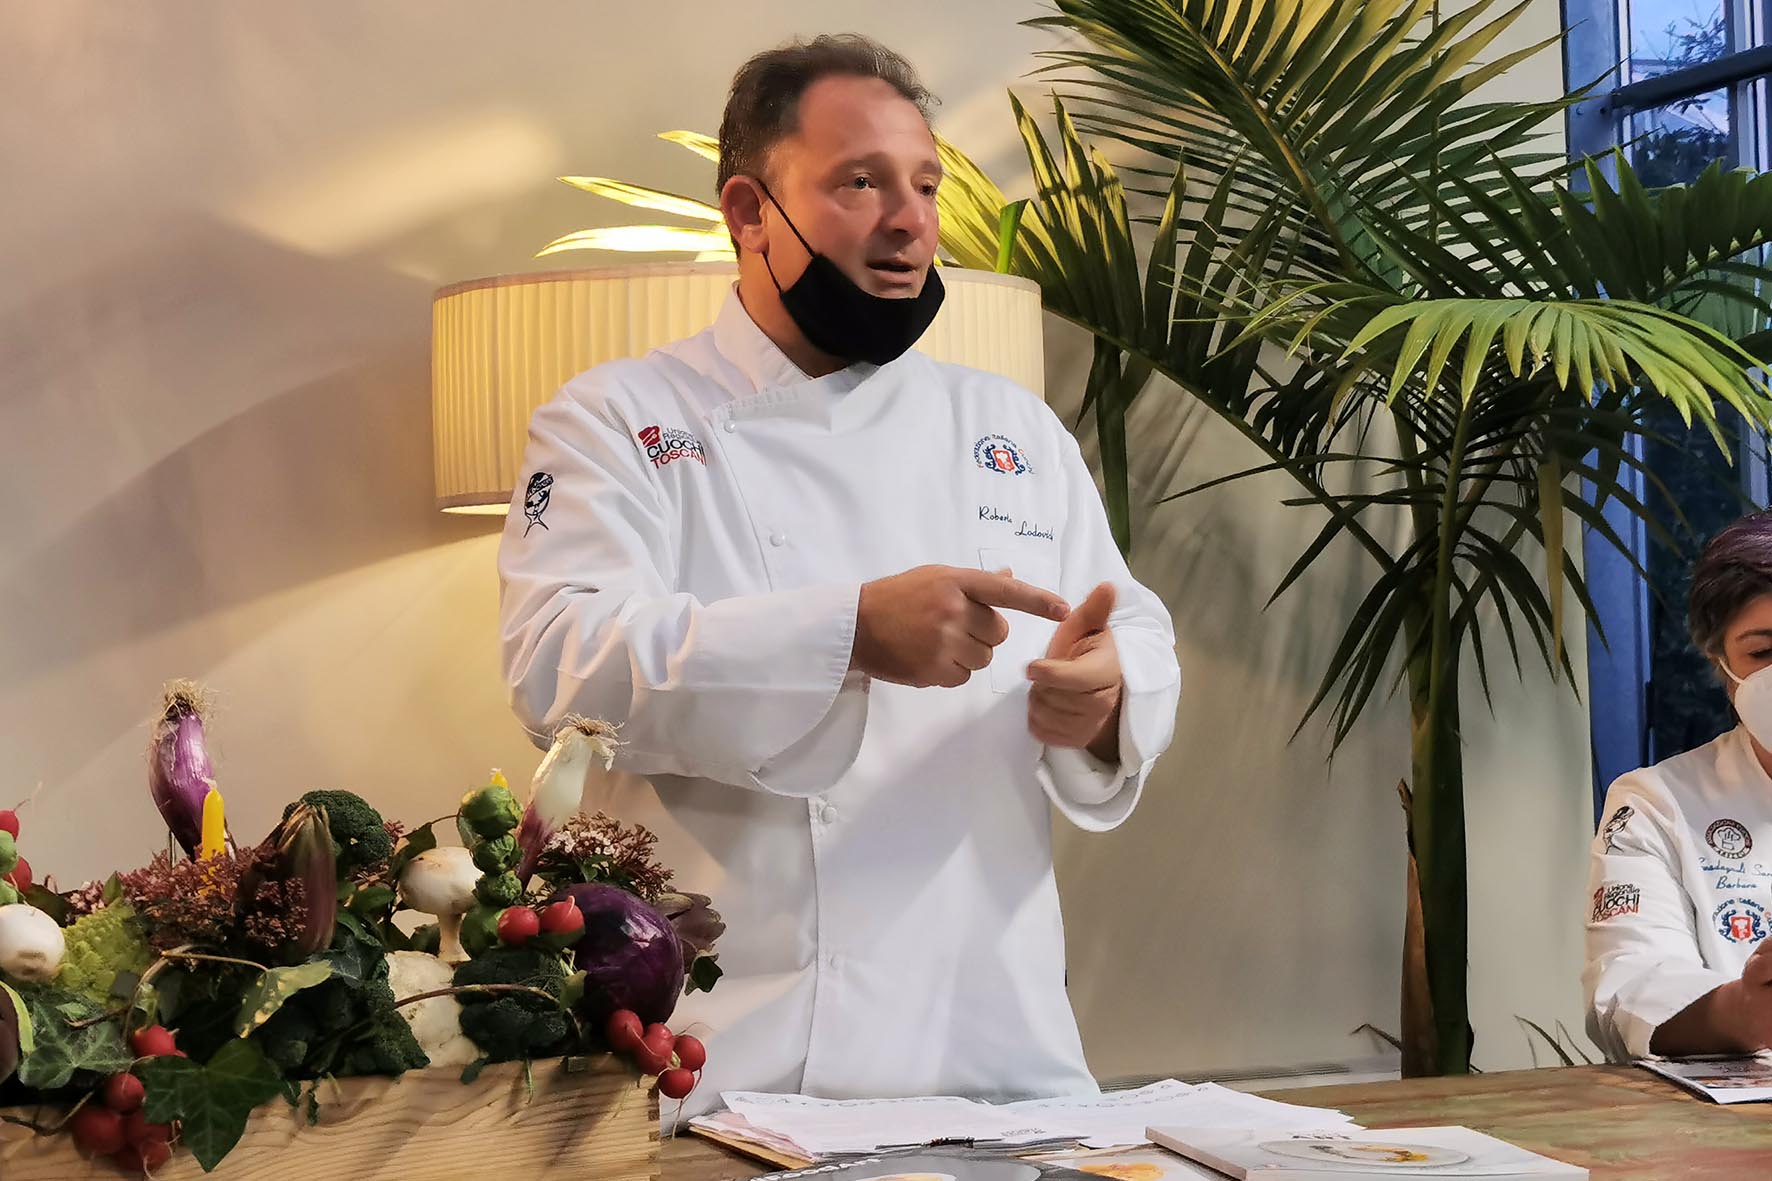 “Miglior Allievo della Toscana”, una gara per premiare gli chef del futuro